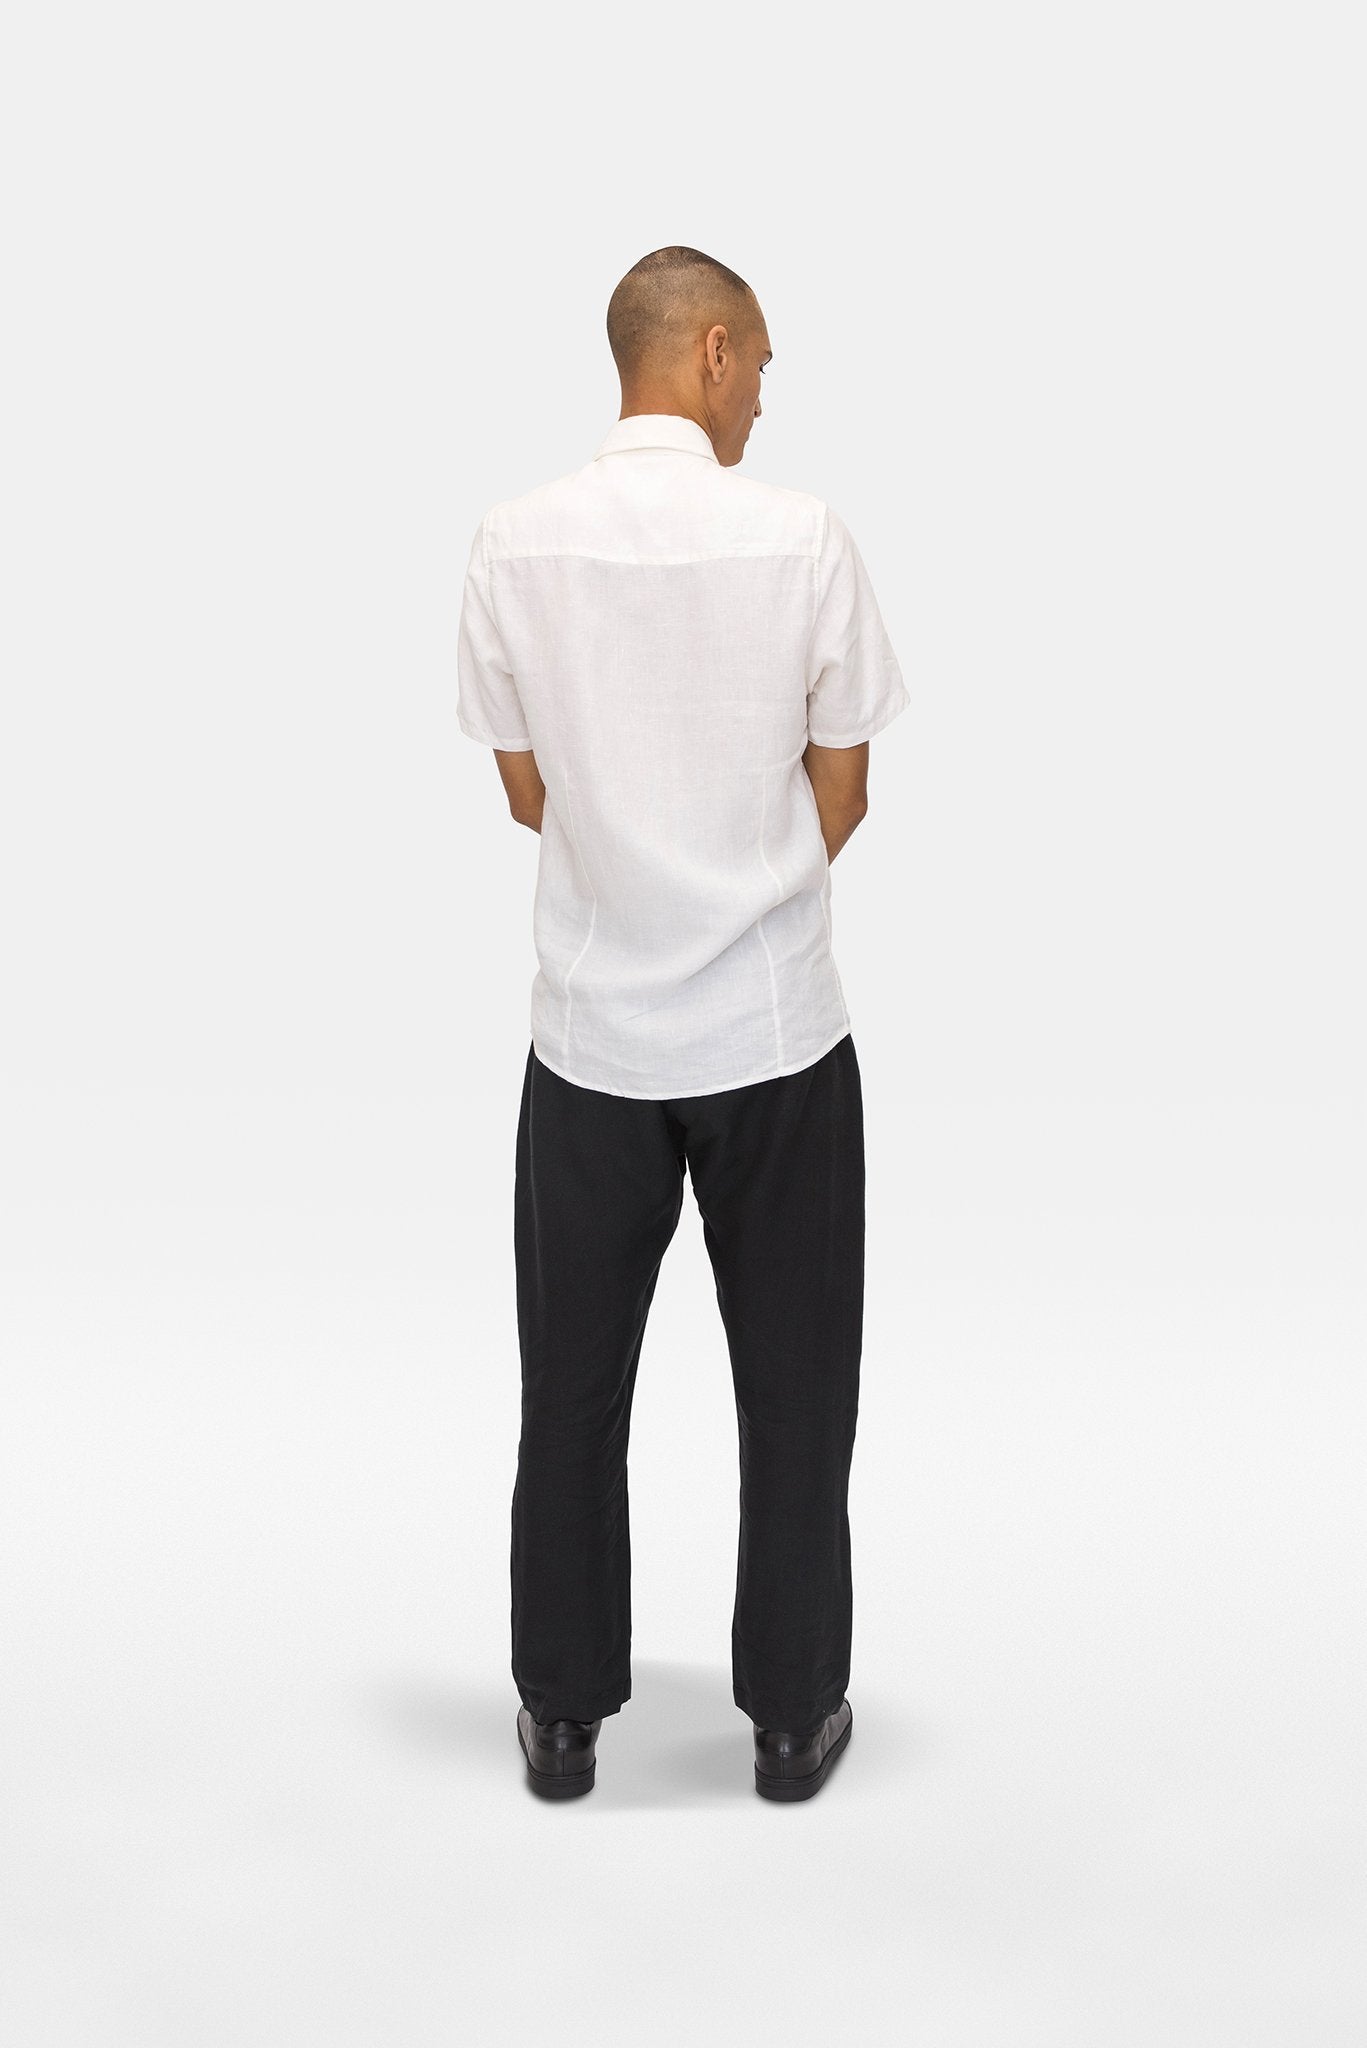 A.BCH A.04 White Short Sleeve Button Up Shirt in Organic Linen